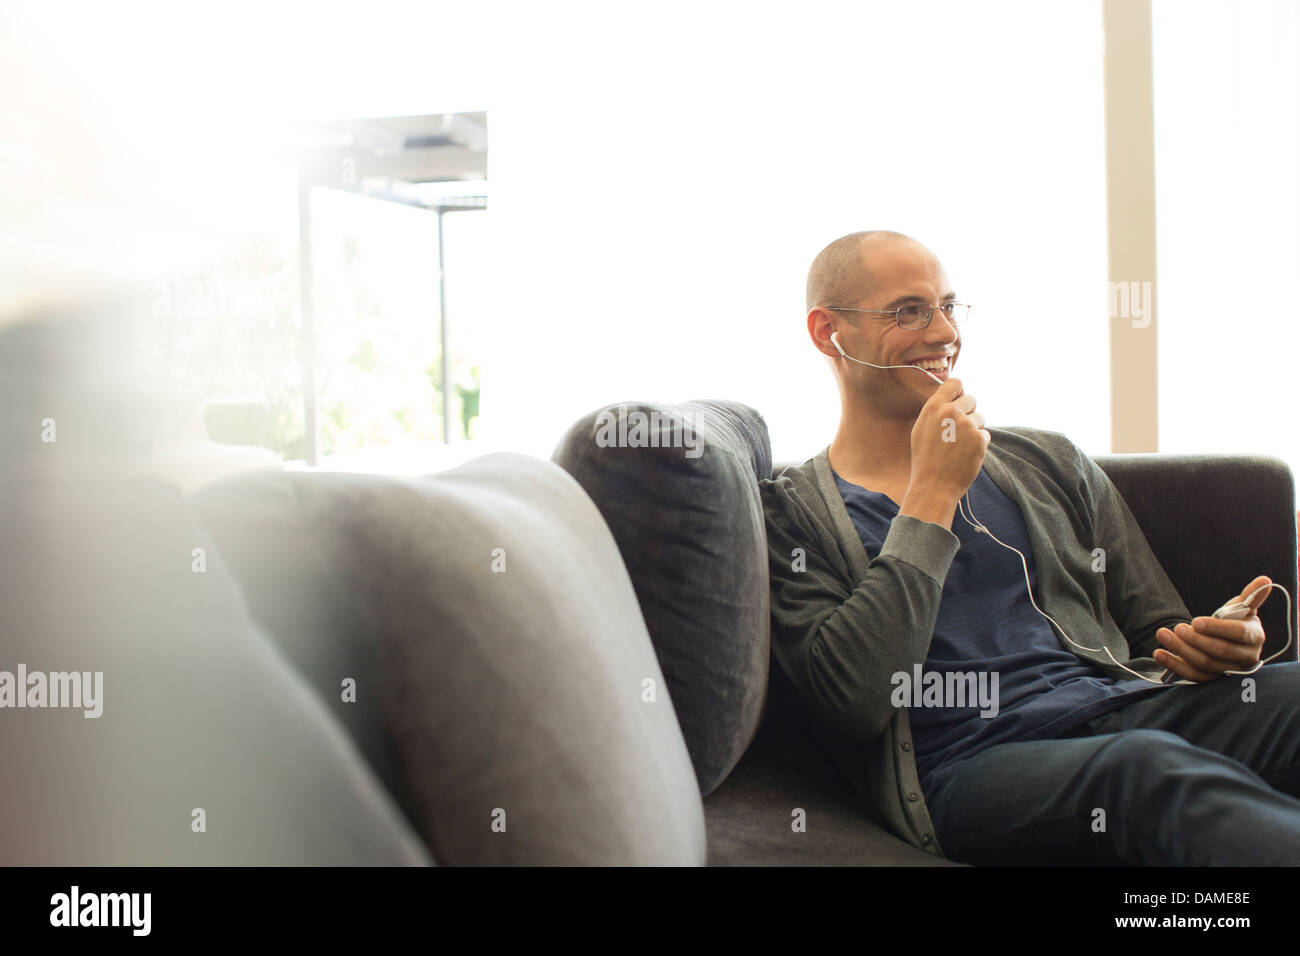 Man talking on headset on sofa Stock Photo